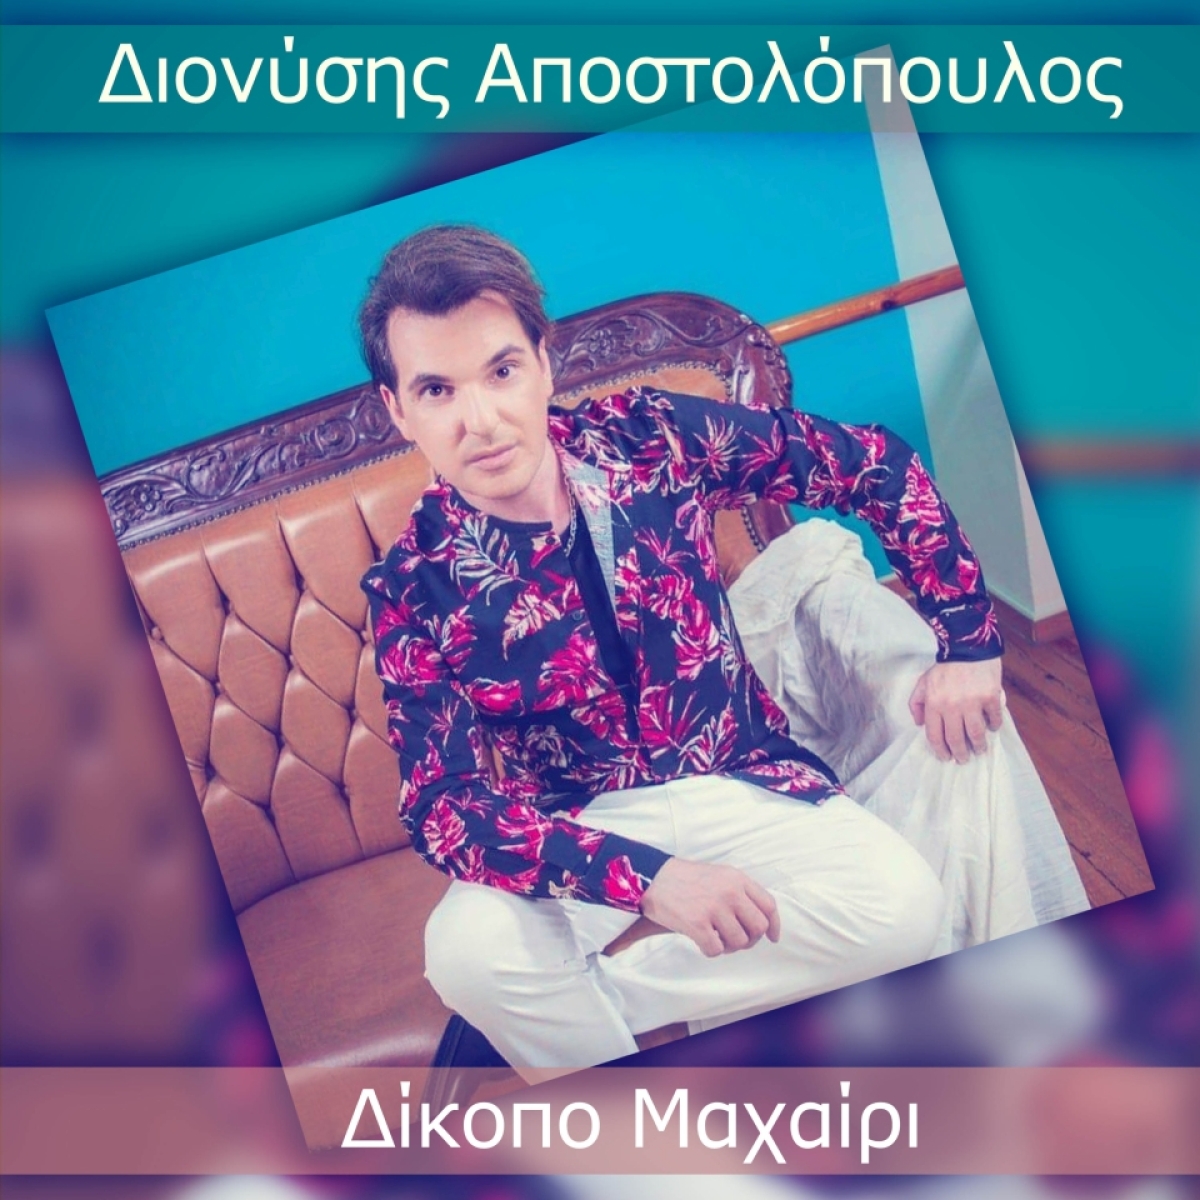 Διονύσης Αποστολόπουλος (Διόνυσος) – Δίκοπο Μαχαίρι | Νέο Promo Single